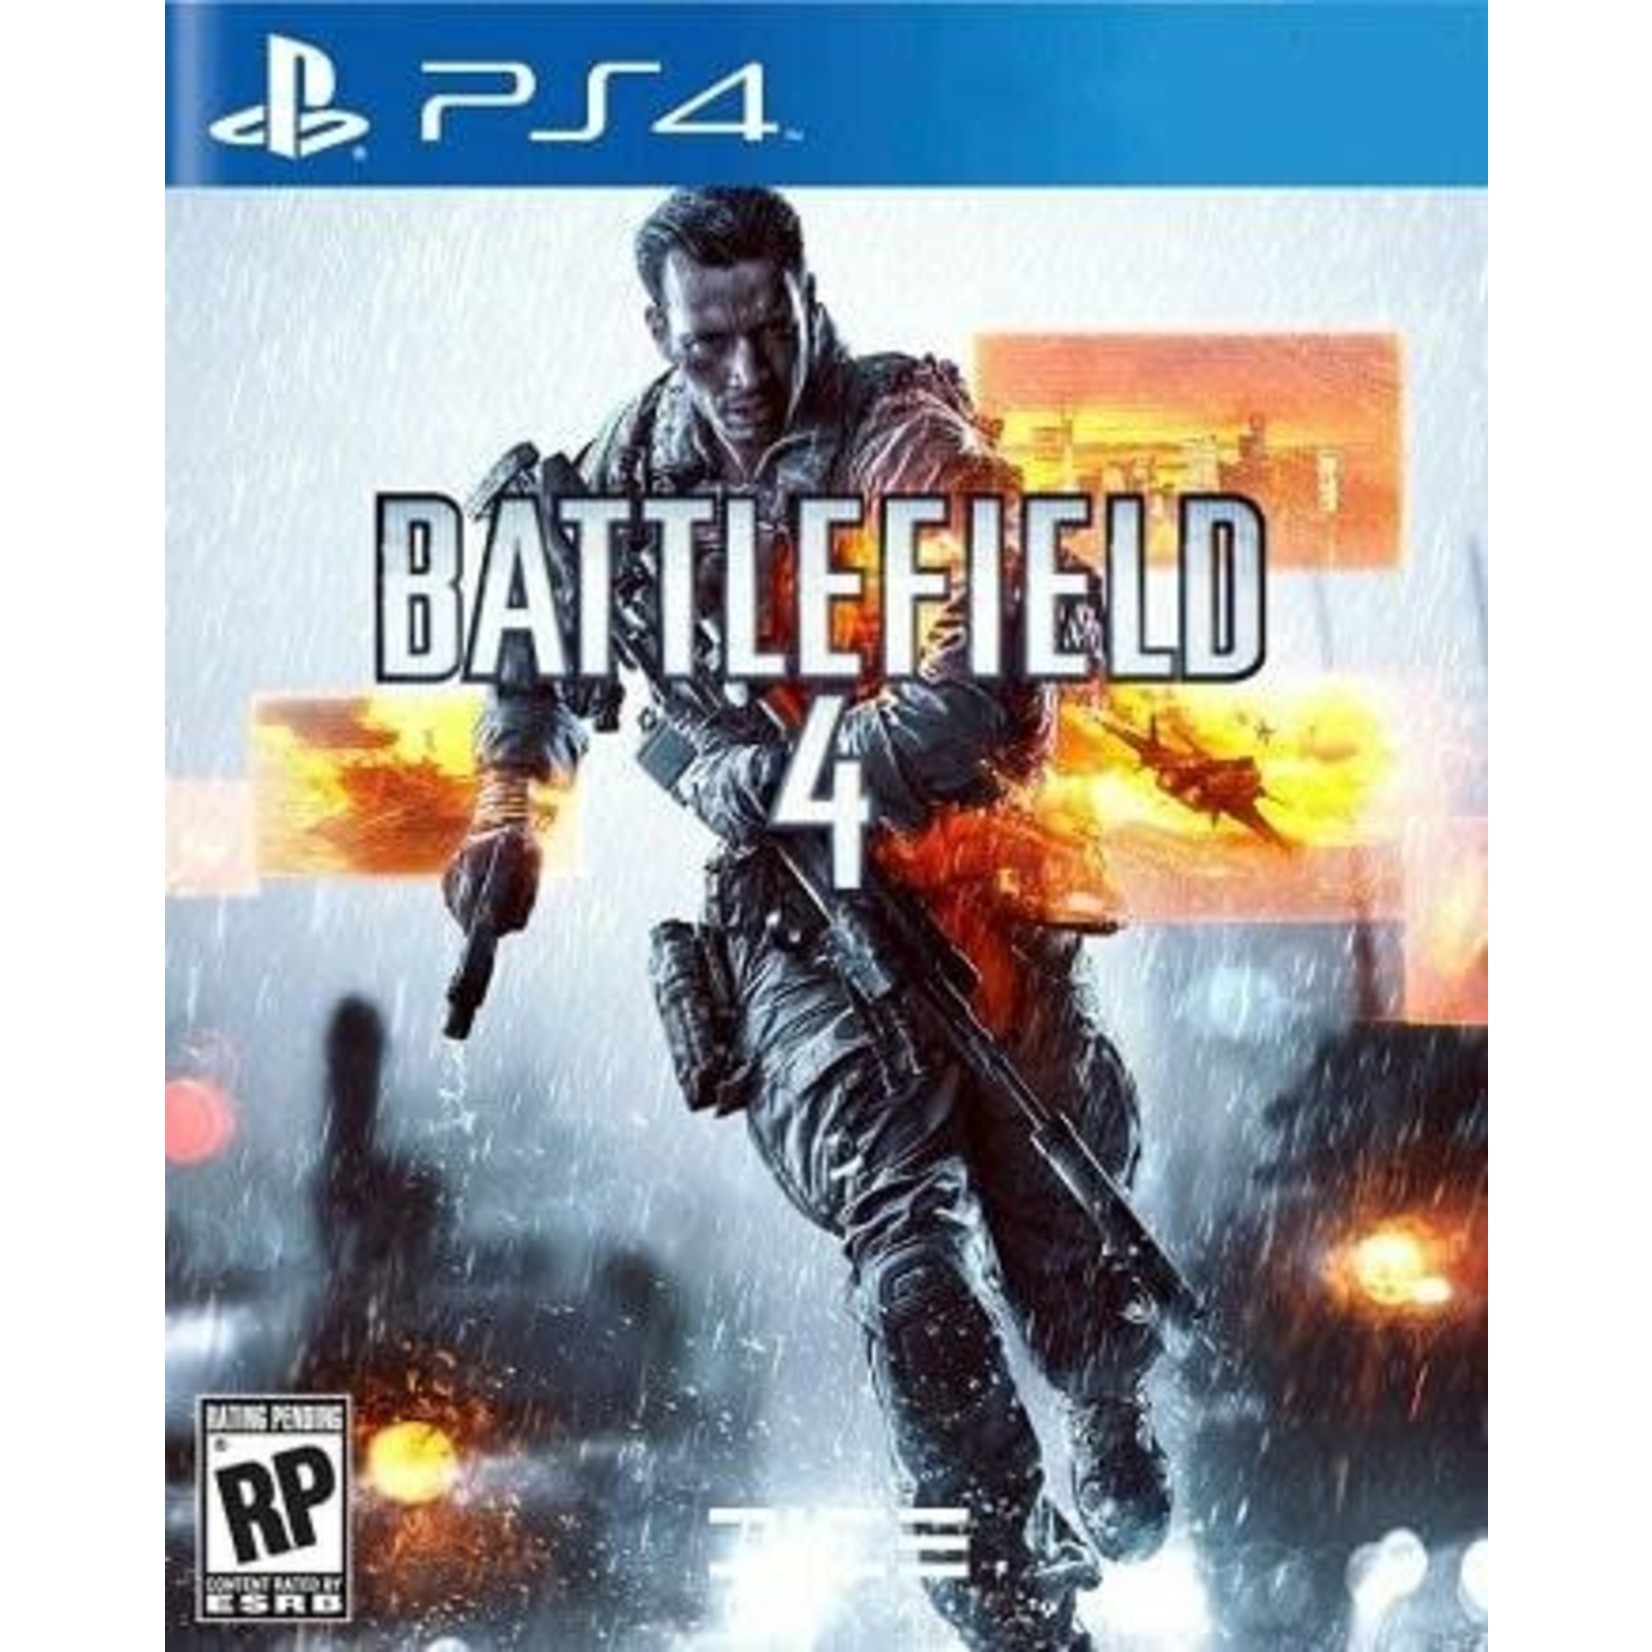 PS4U-Battlefield 4